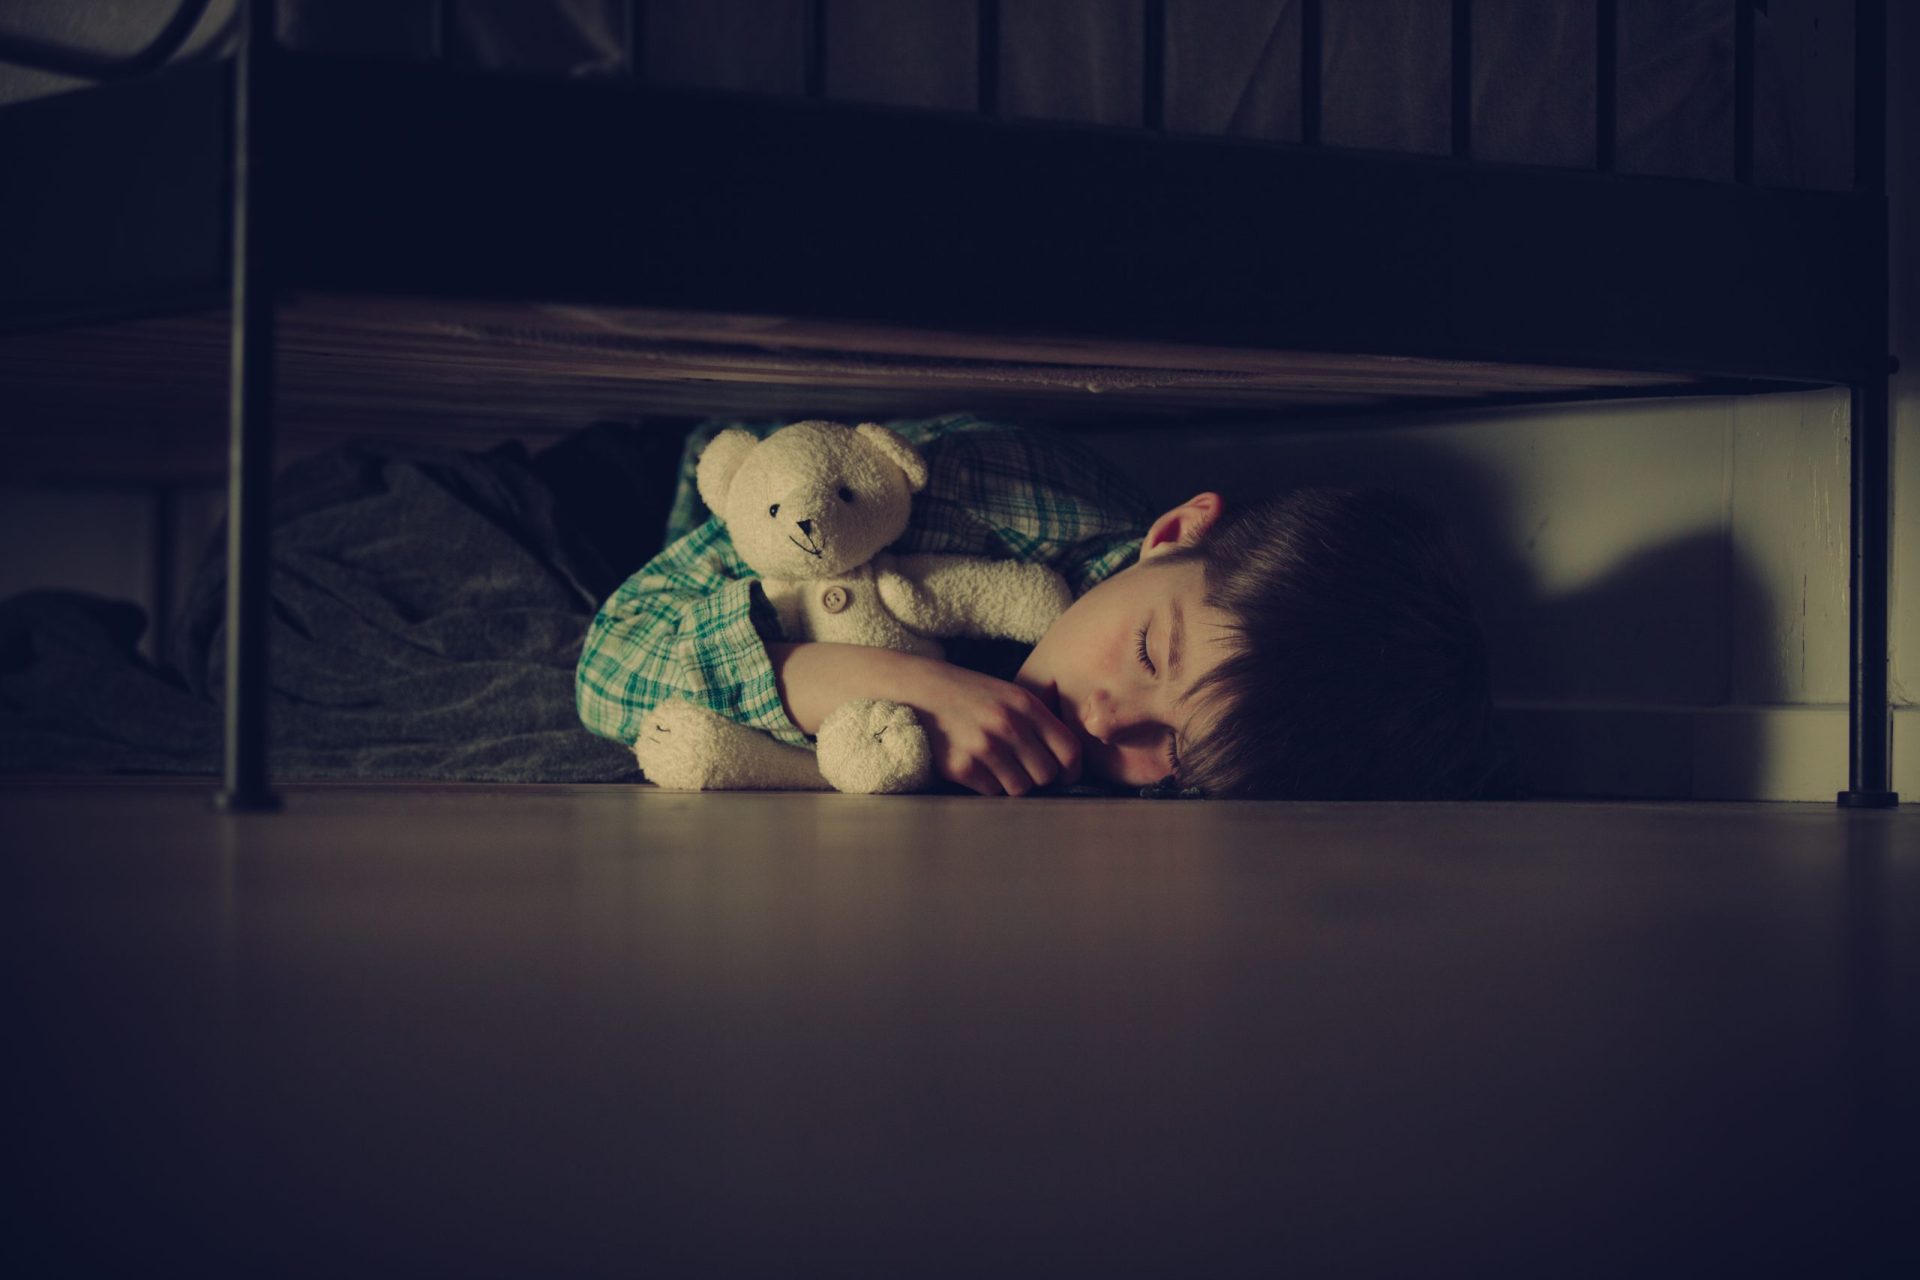 Criança dada como desaparecida afinal estava escondida debaixo da cama